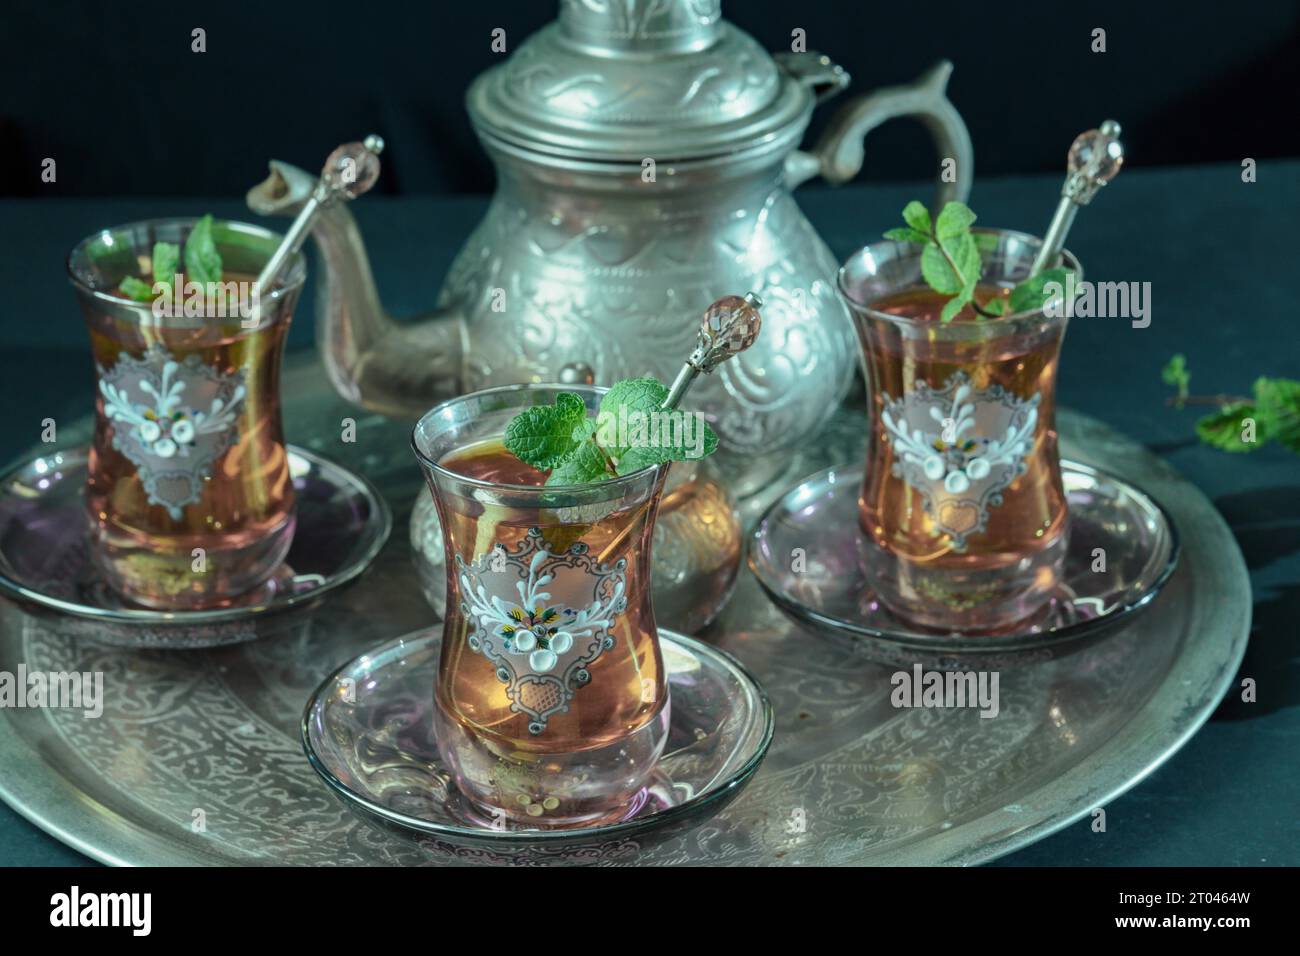 Primo piano di un tradizionale servizio di tè alla menta moresca, con bicchieri decorati e teiera argentata e ciotola di zucchero argentato Foto Stock